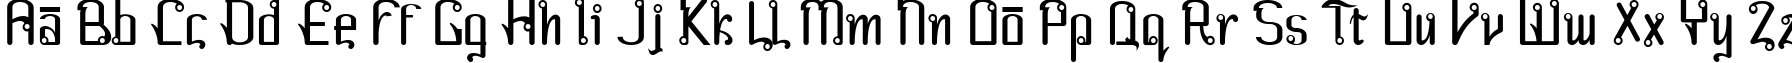 Пример написания английского алфавита шрифтом Farang